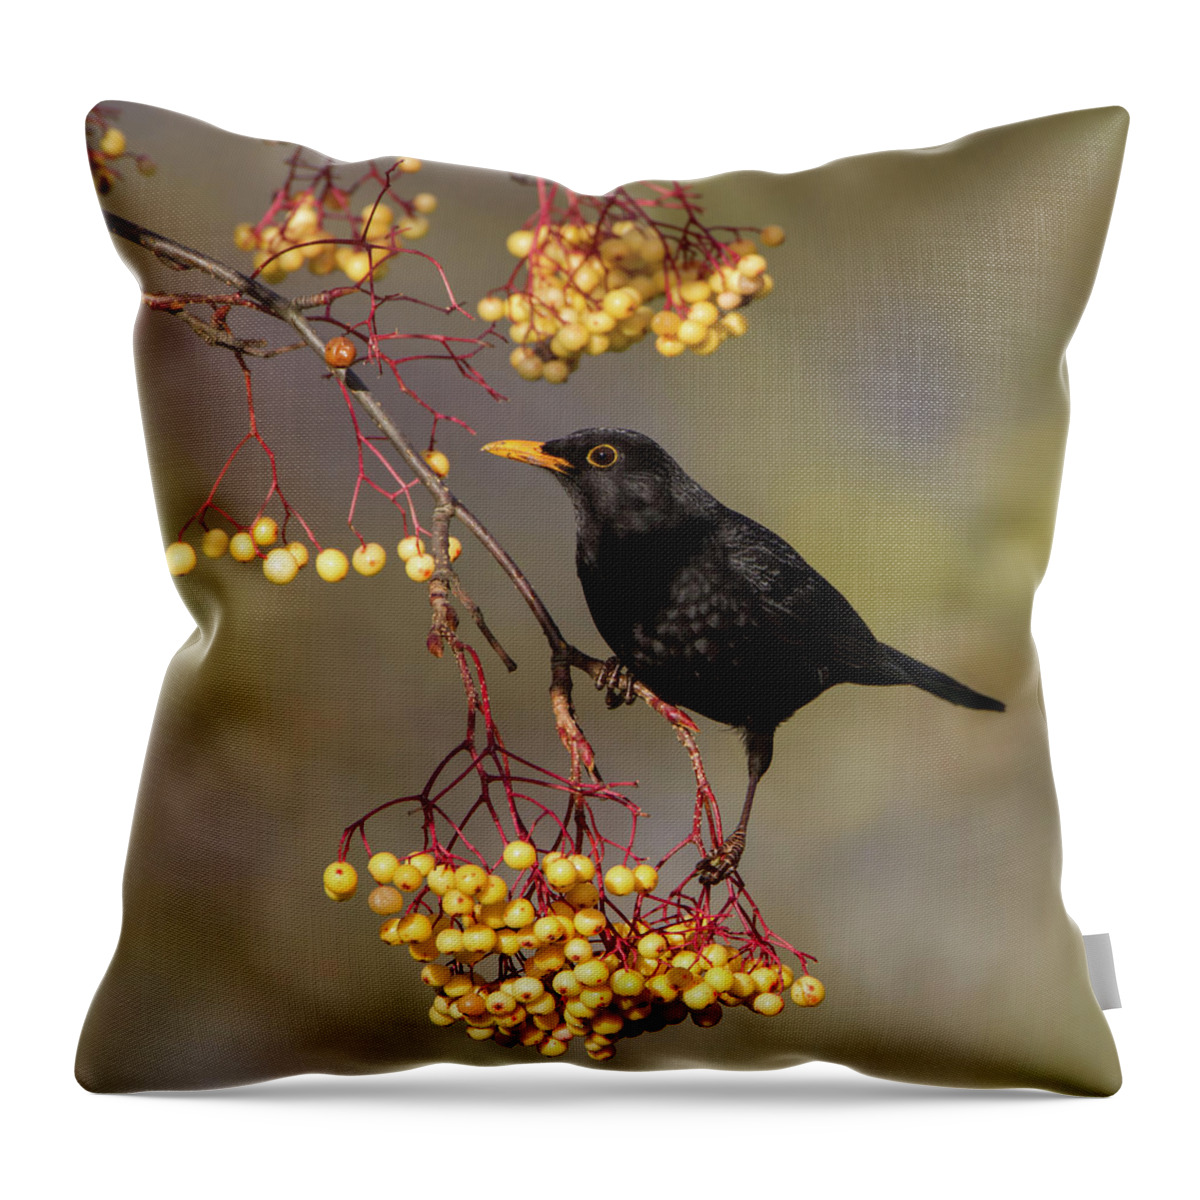 Blackbird Throw Pillow featuring the photograph Blackbird Yellow Berries by Pete Walkden